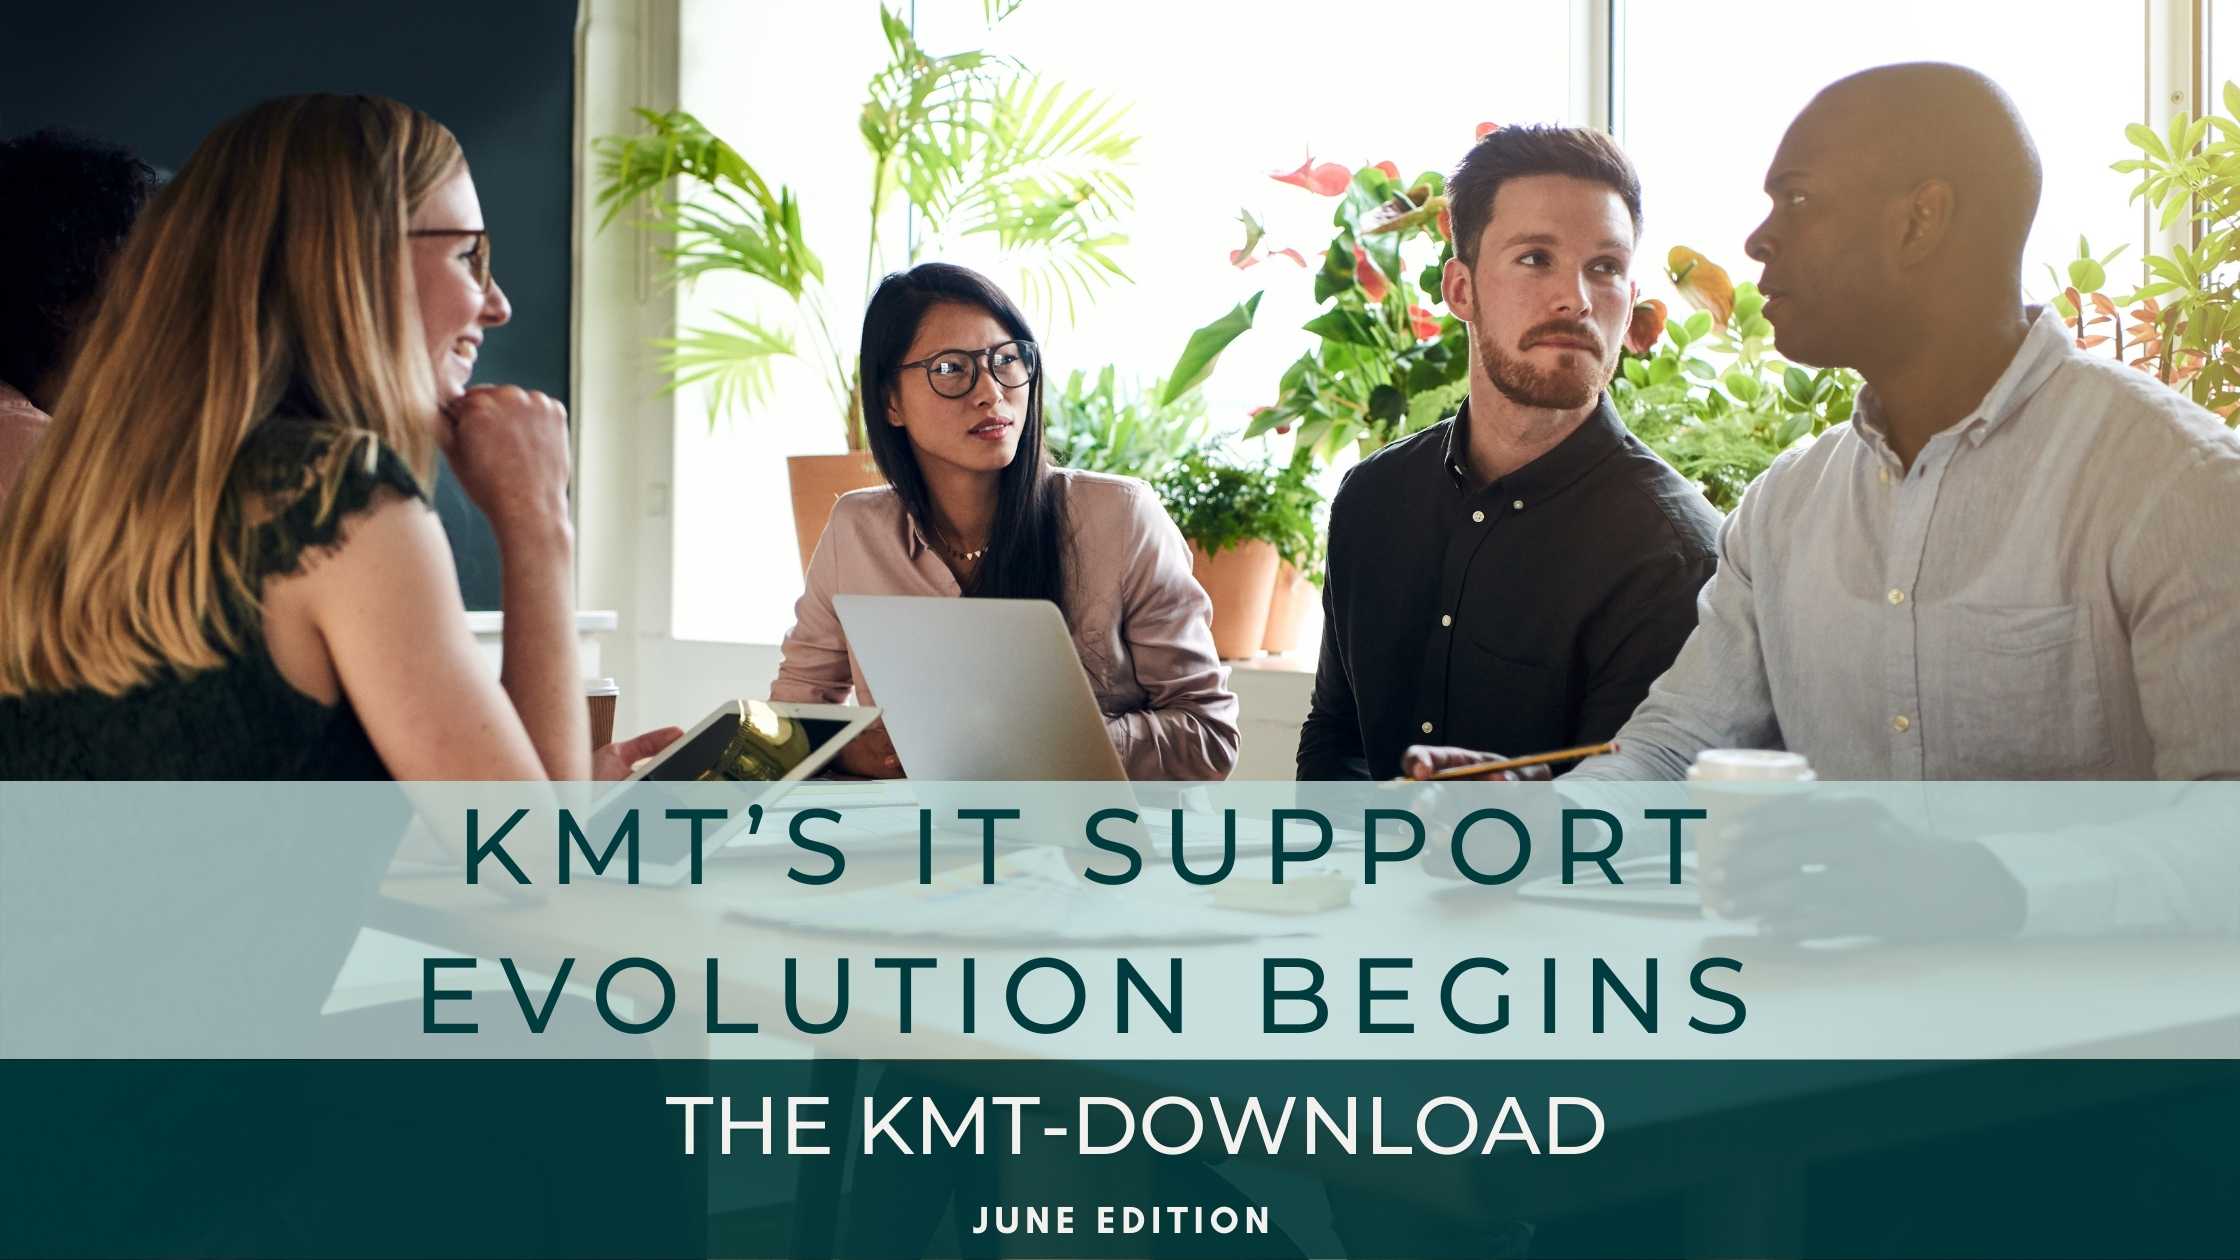 June Edition I KMT's IT Support Evolution Begins